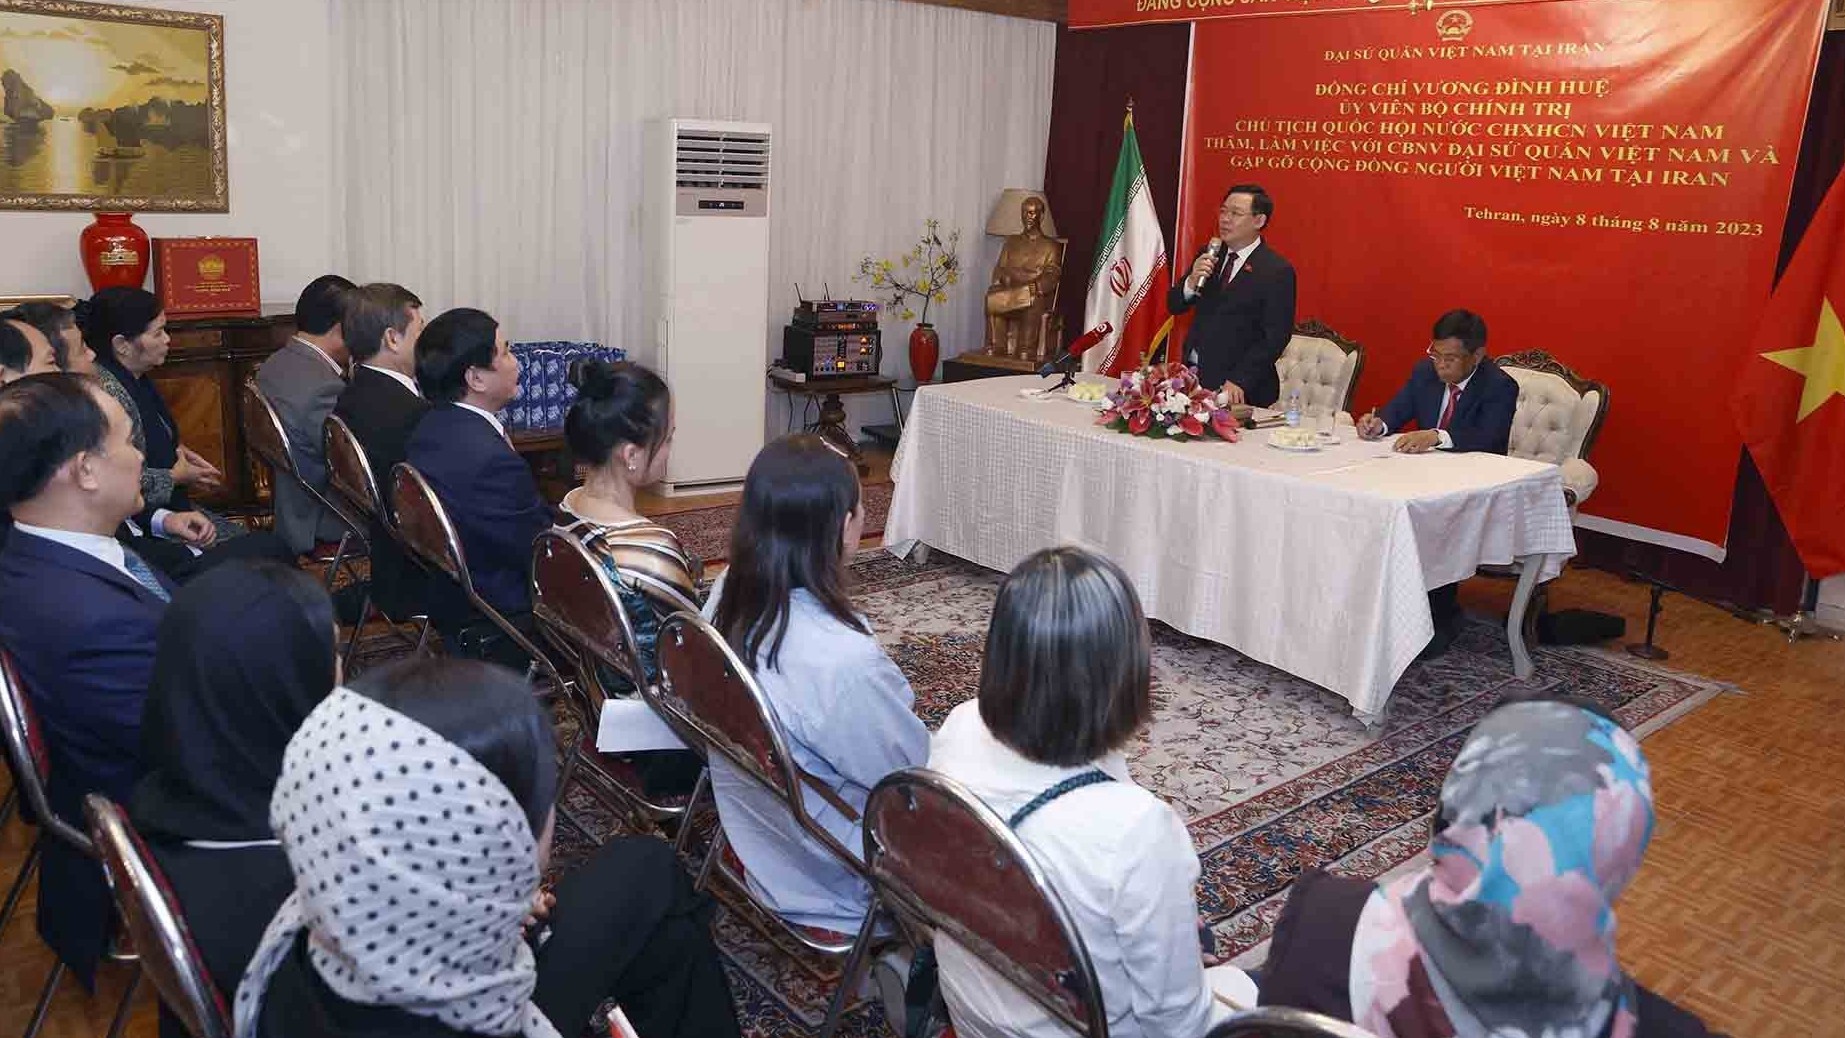 Chủ tịch Quốc hội Vương Đình Huệ thăm Đại sứ quán và gặp gỡ cộng đồng người Việt Nam tại Iran